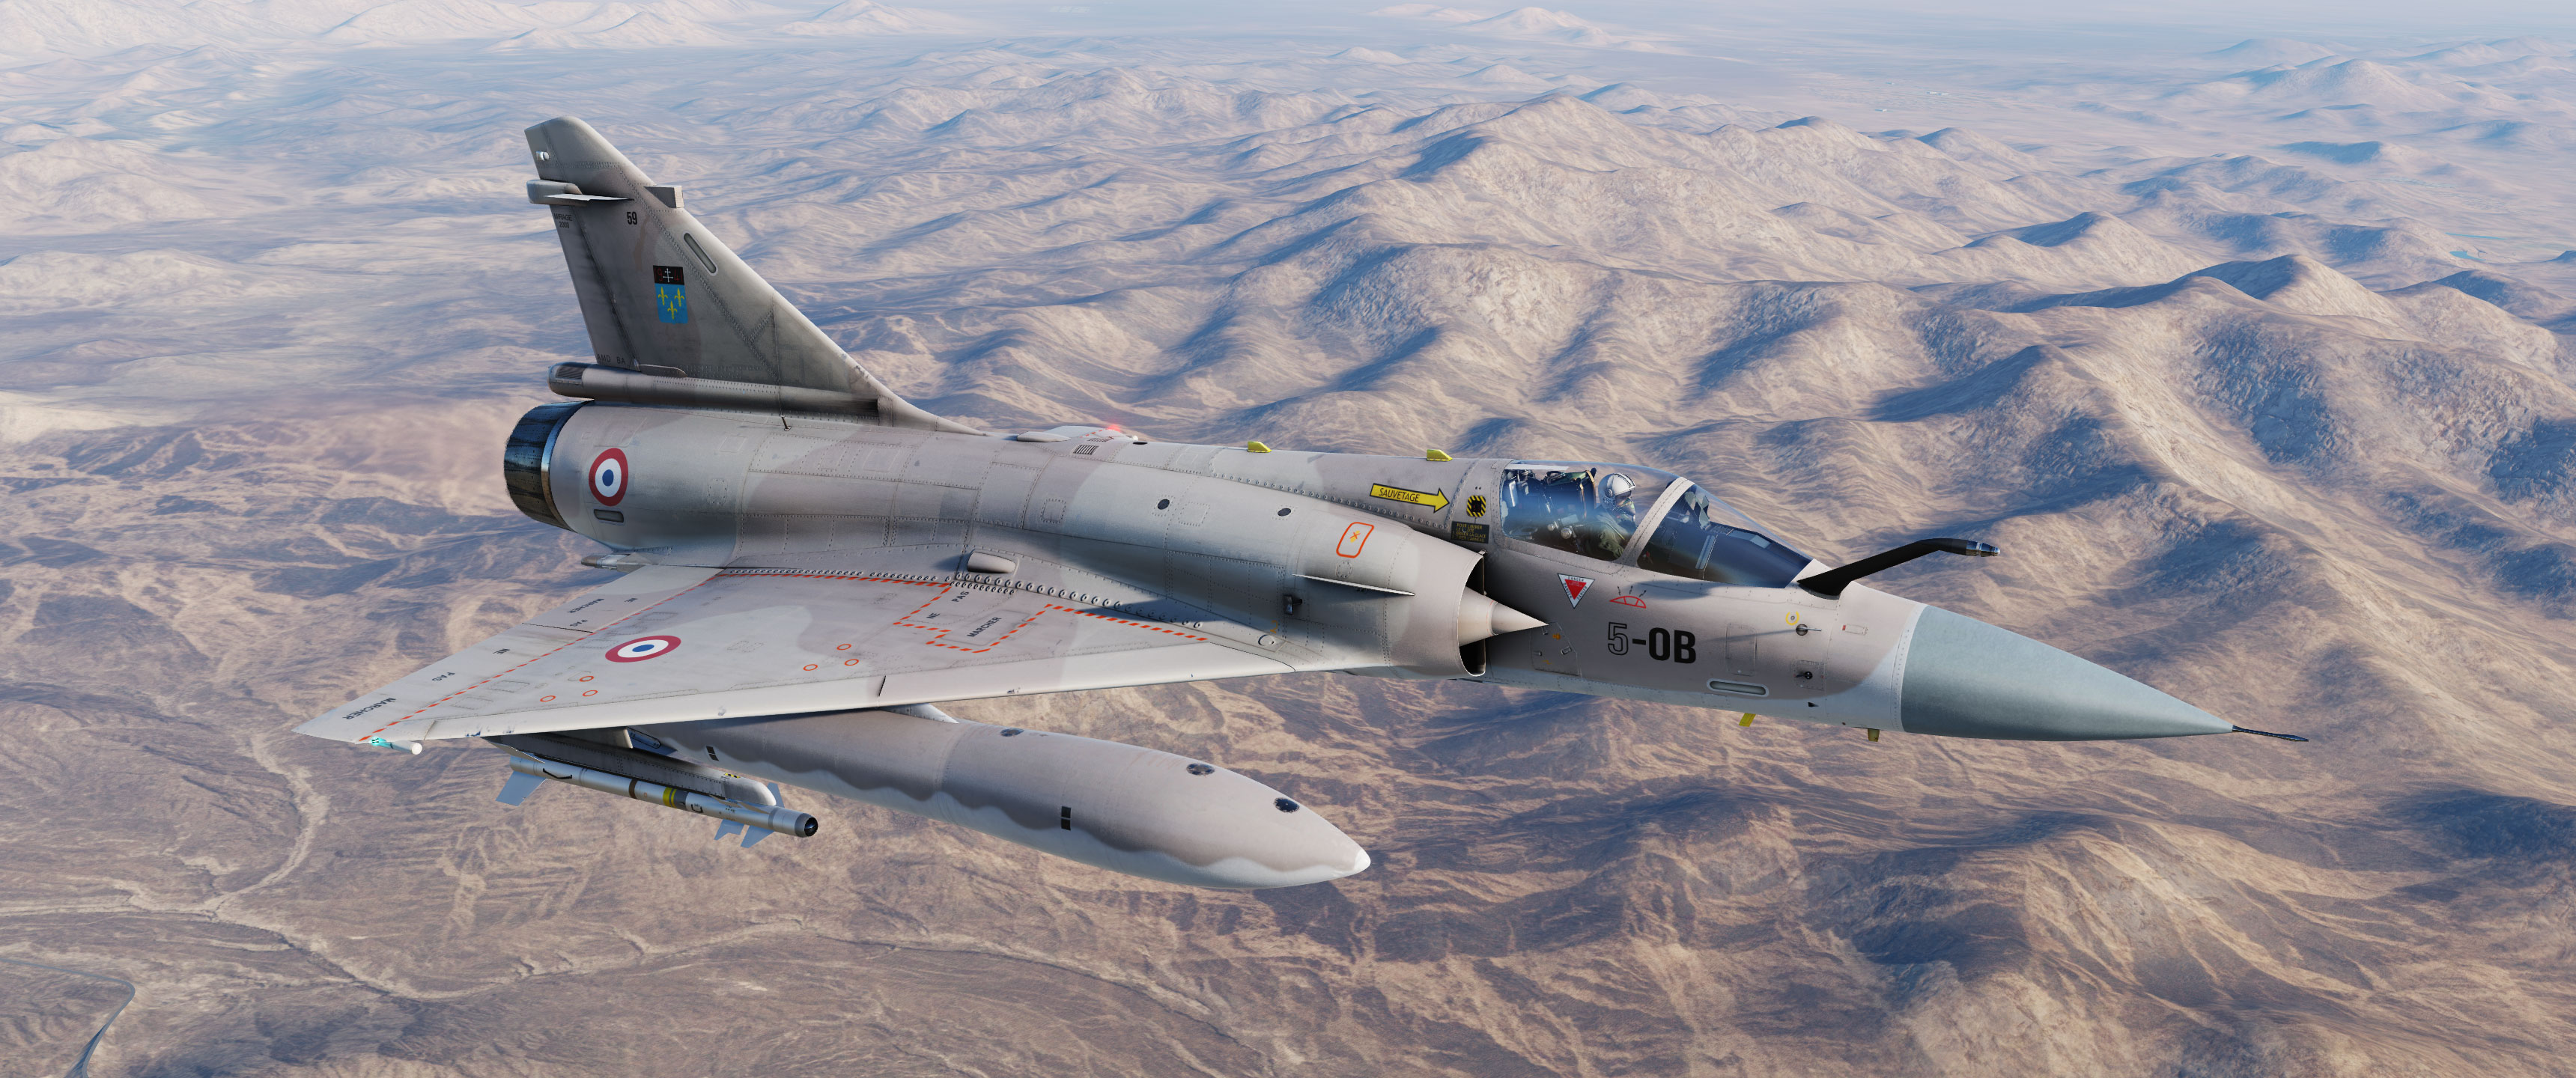 Mirage-2000C Escadron Ile de France opération Desert Storm v2.2 03.02.2023 Update